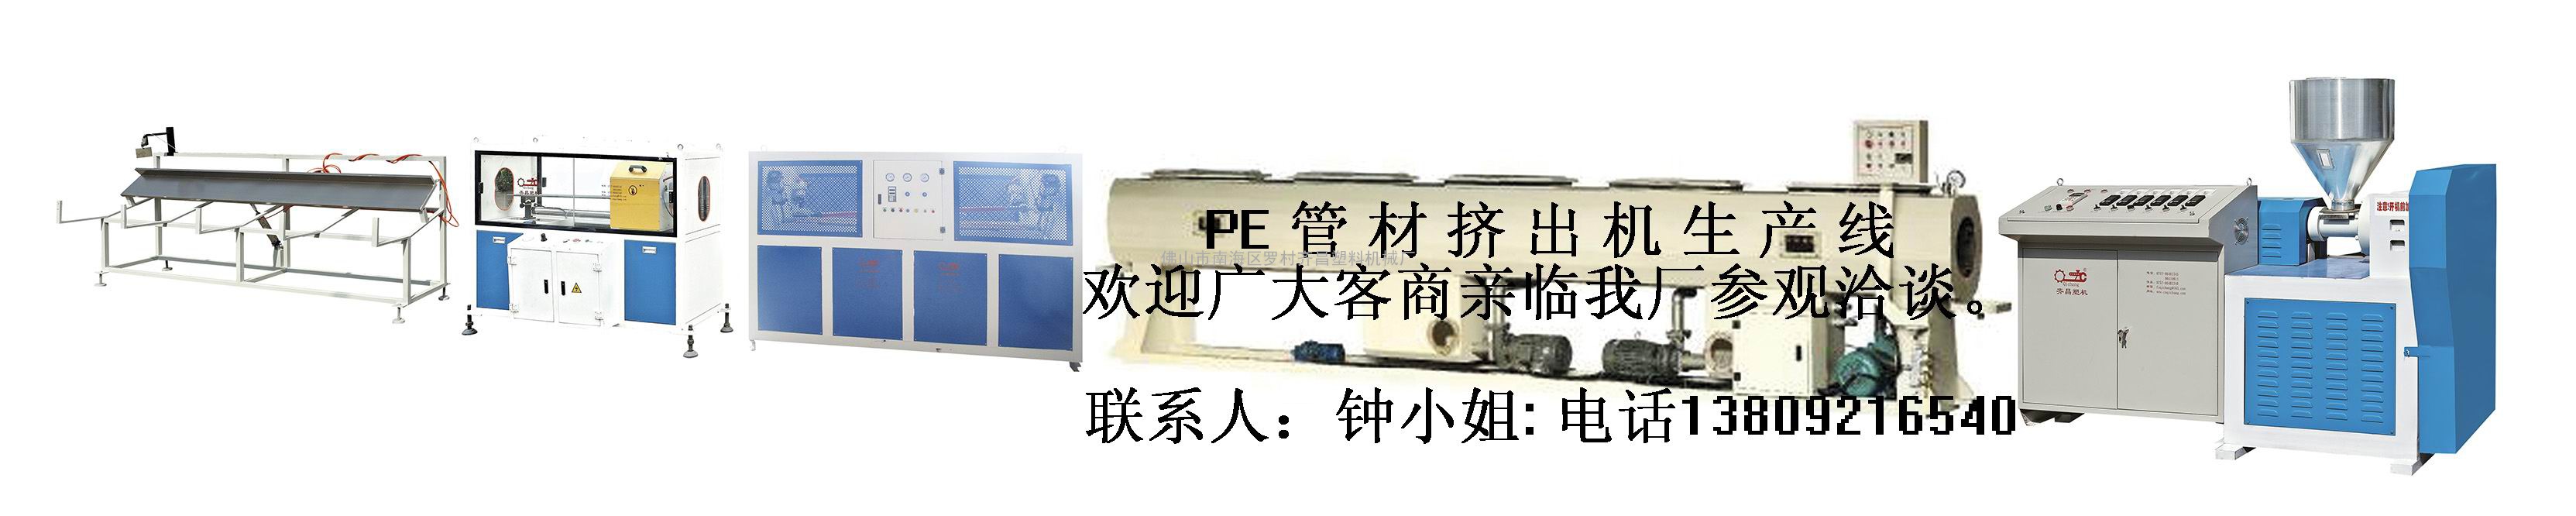 PE塑料管材生产线